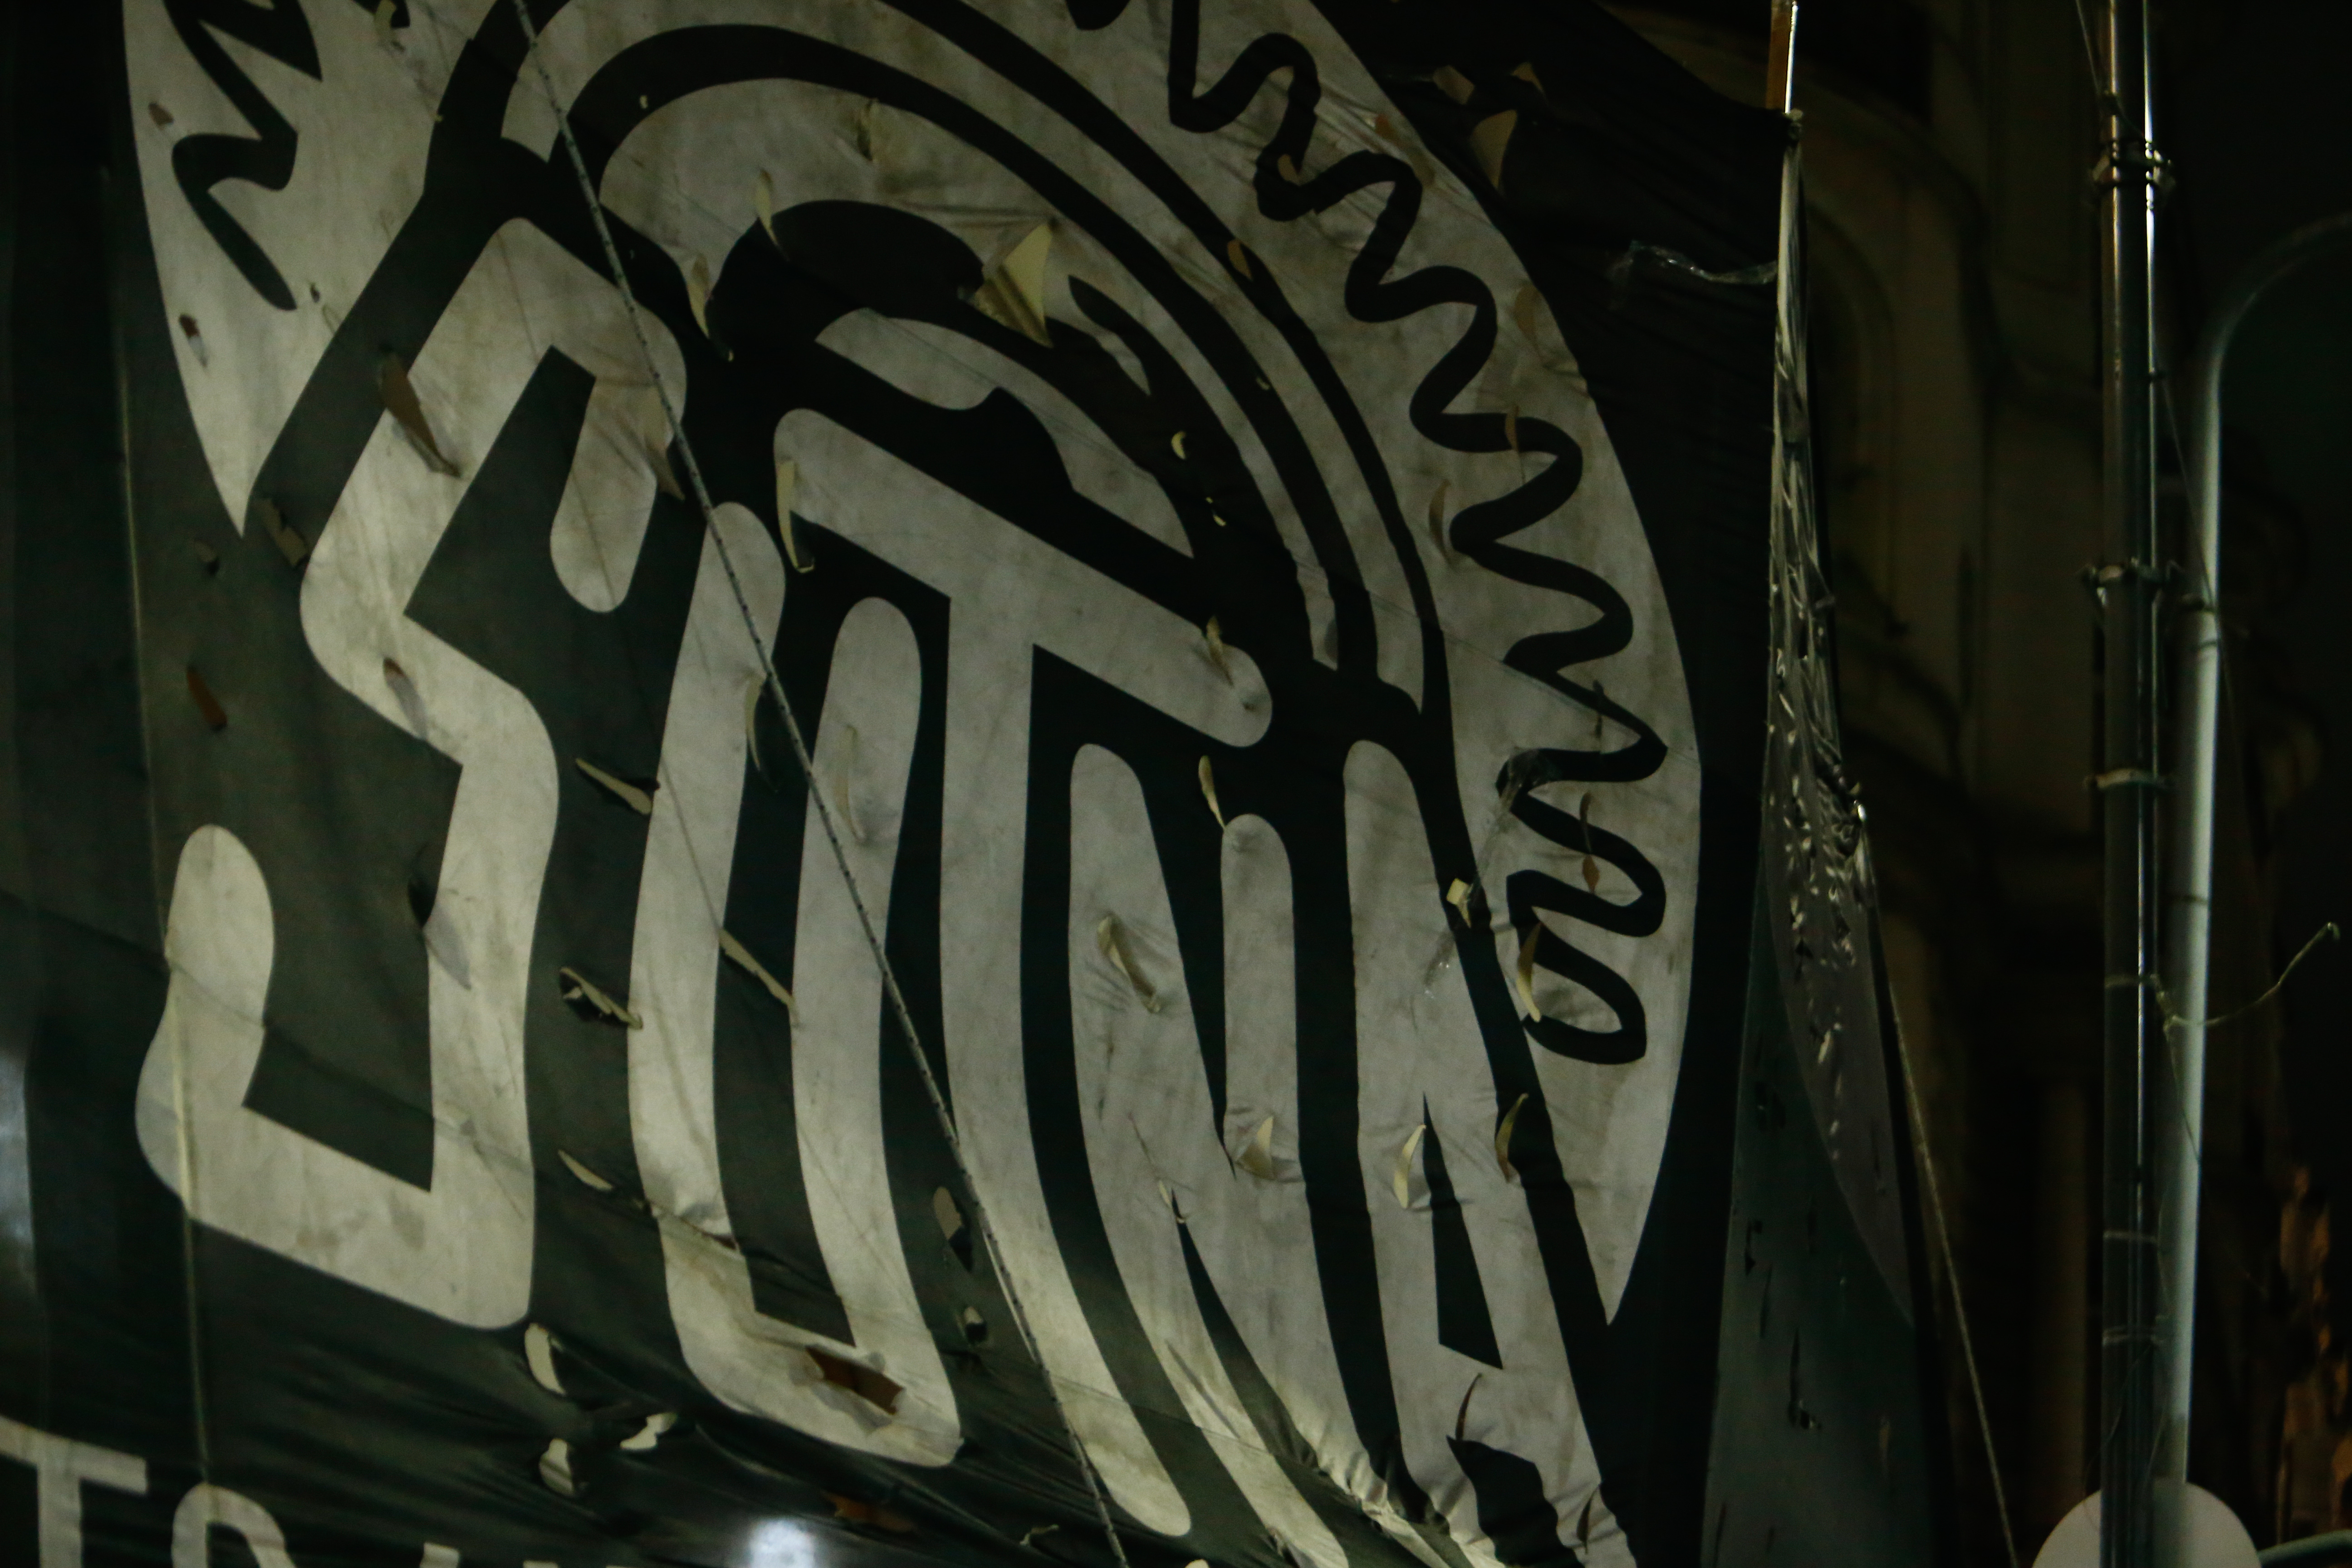 Sutna es al sigla del Sindicato Único de Trabajadores del Neumático Argentino (Luciano Gonzalez)